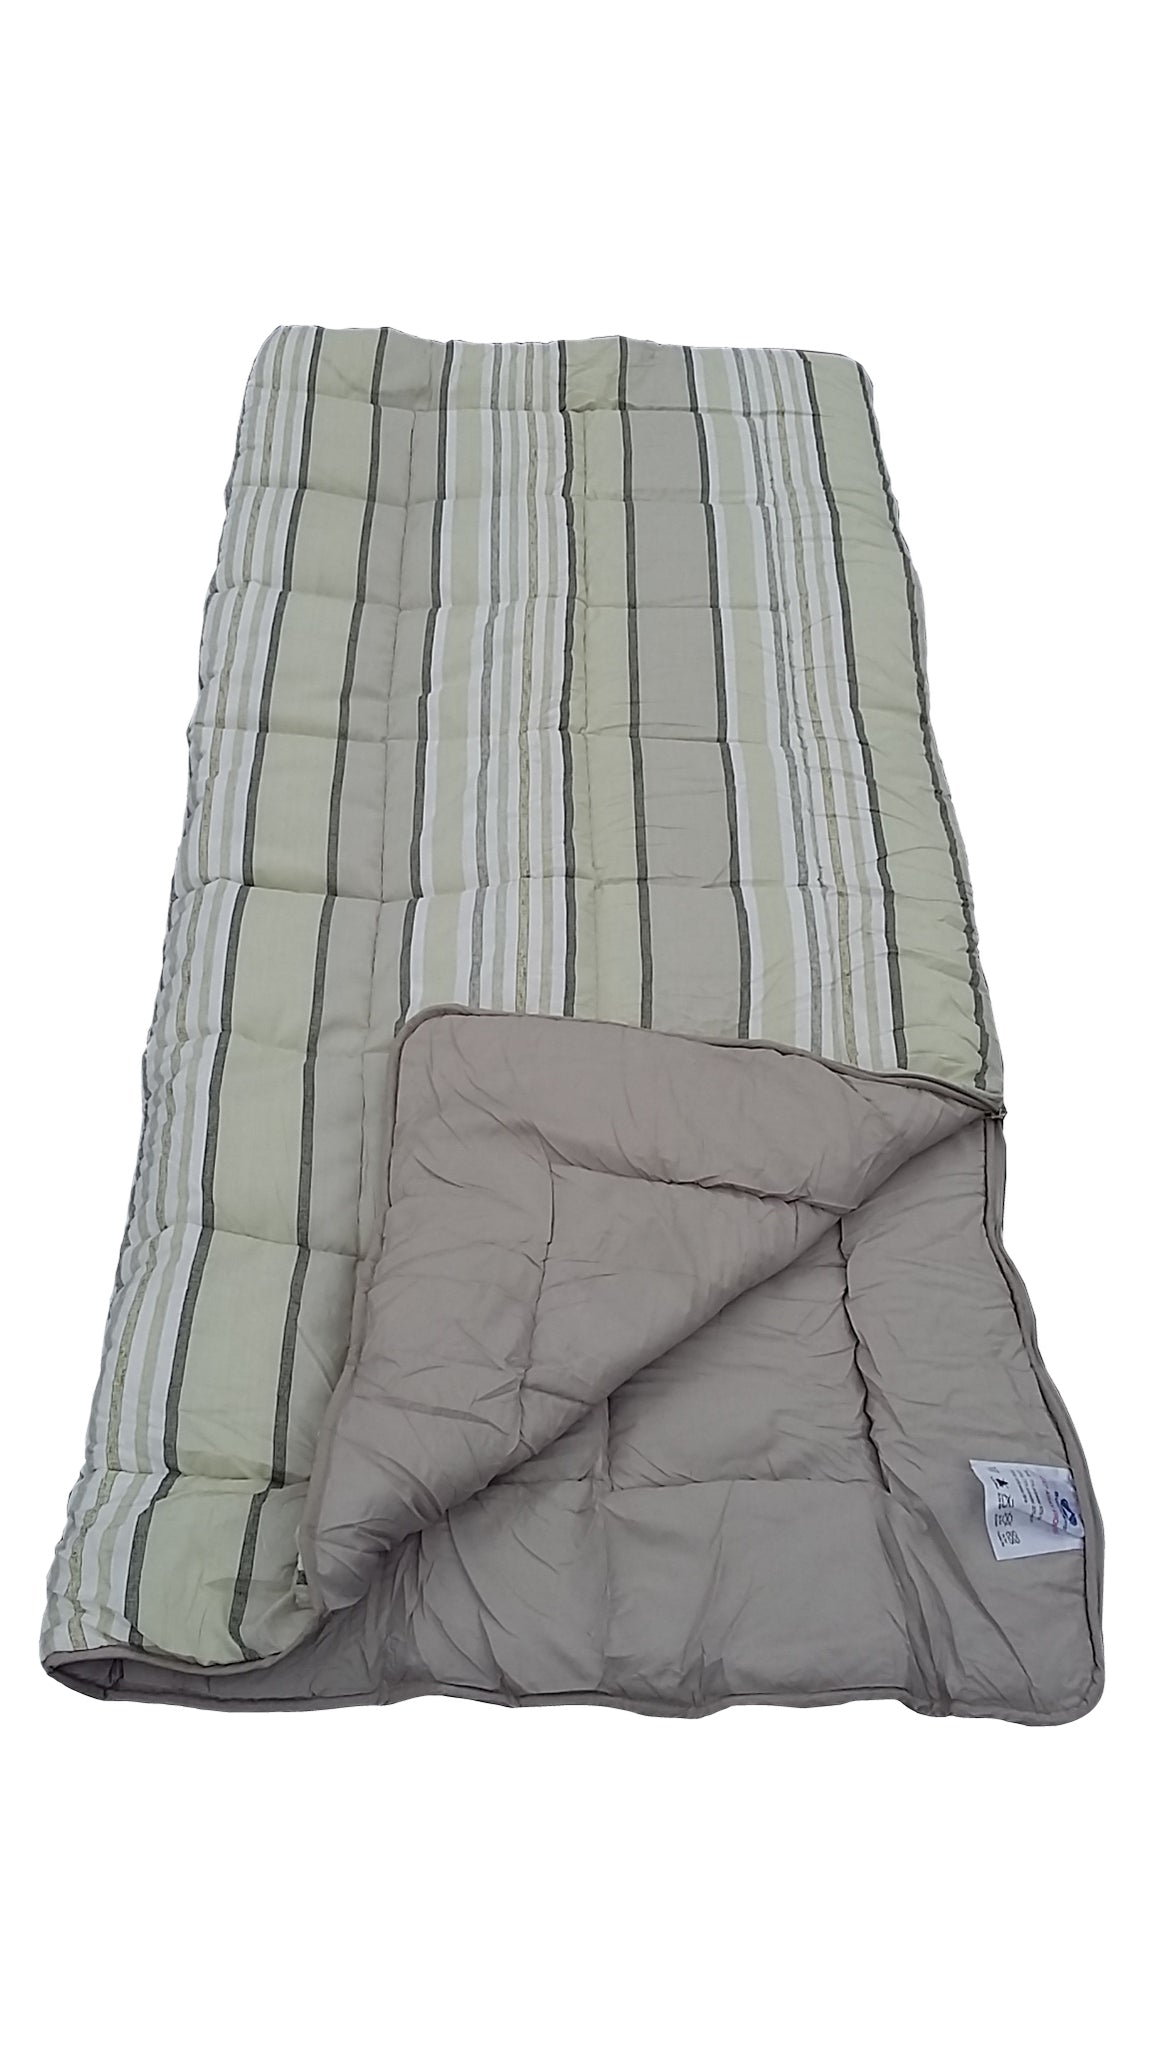 Grey Stripe - Super King Size Sleeping Bag